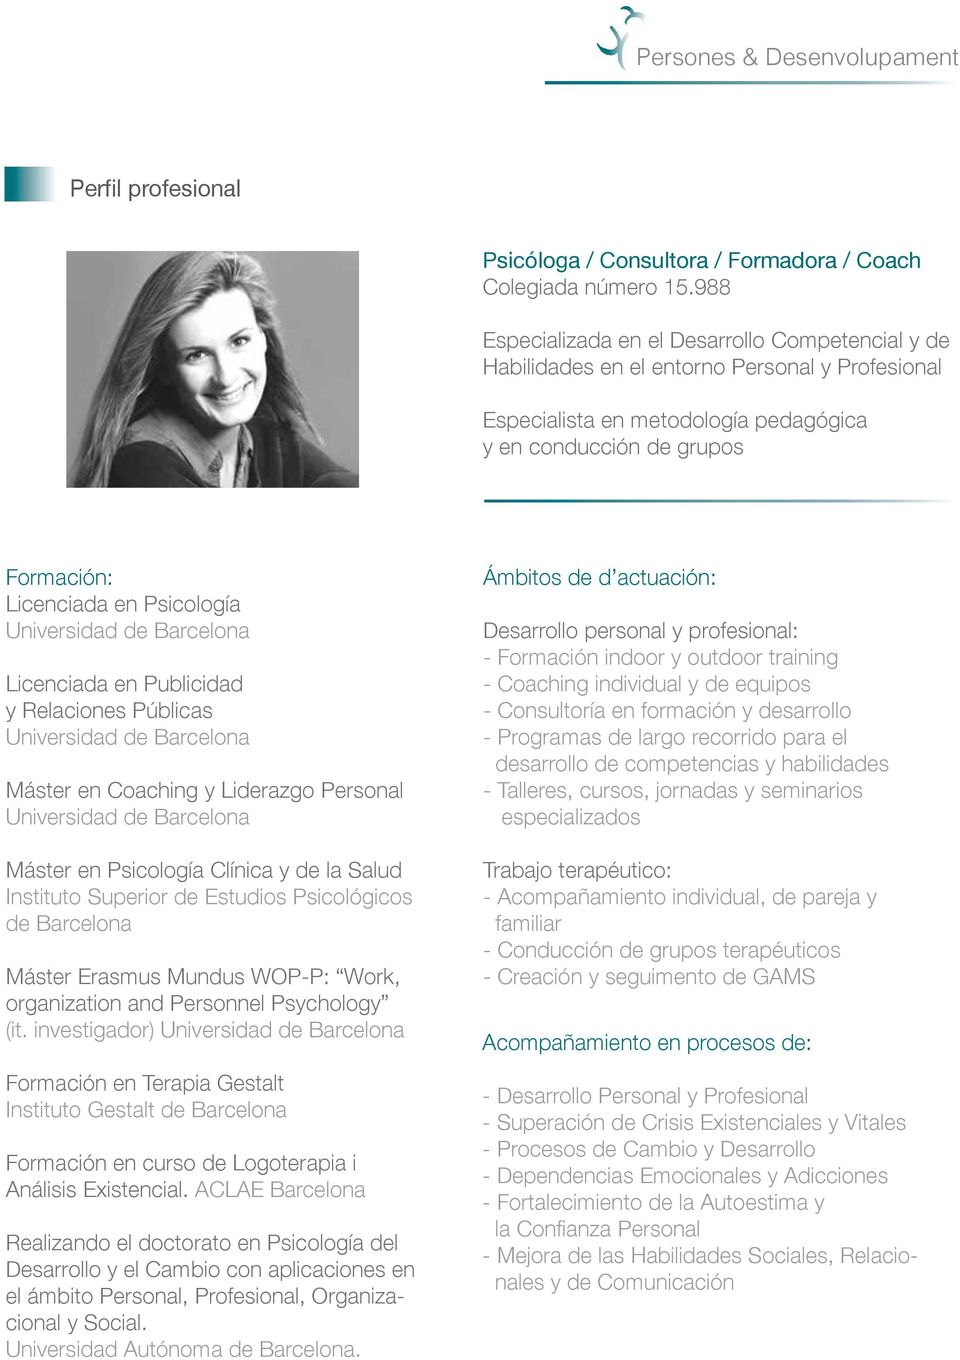 Psicología Licenciada en Publicidad y Relaciones Públicas Máster en Coaching y Liderazgo Personal Máster en Psicología Clínica y de la Salud Instituto Superior de Estudios Psicológicos de Barcelona